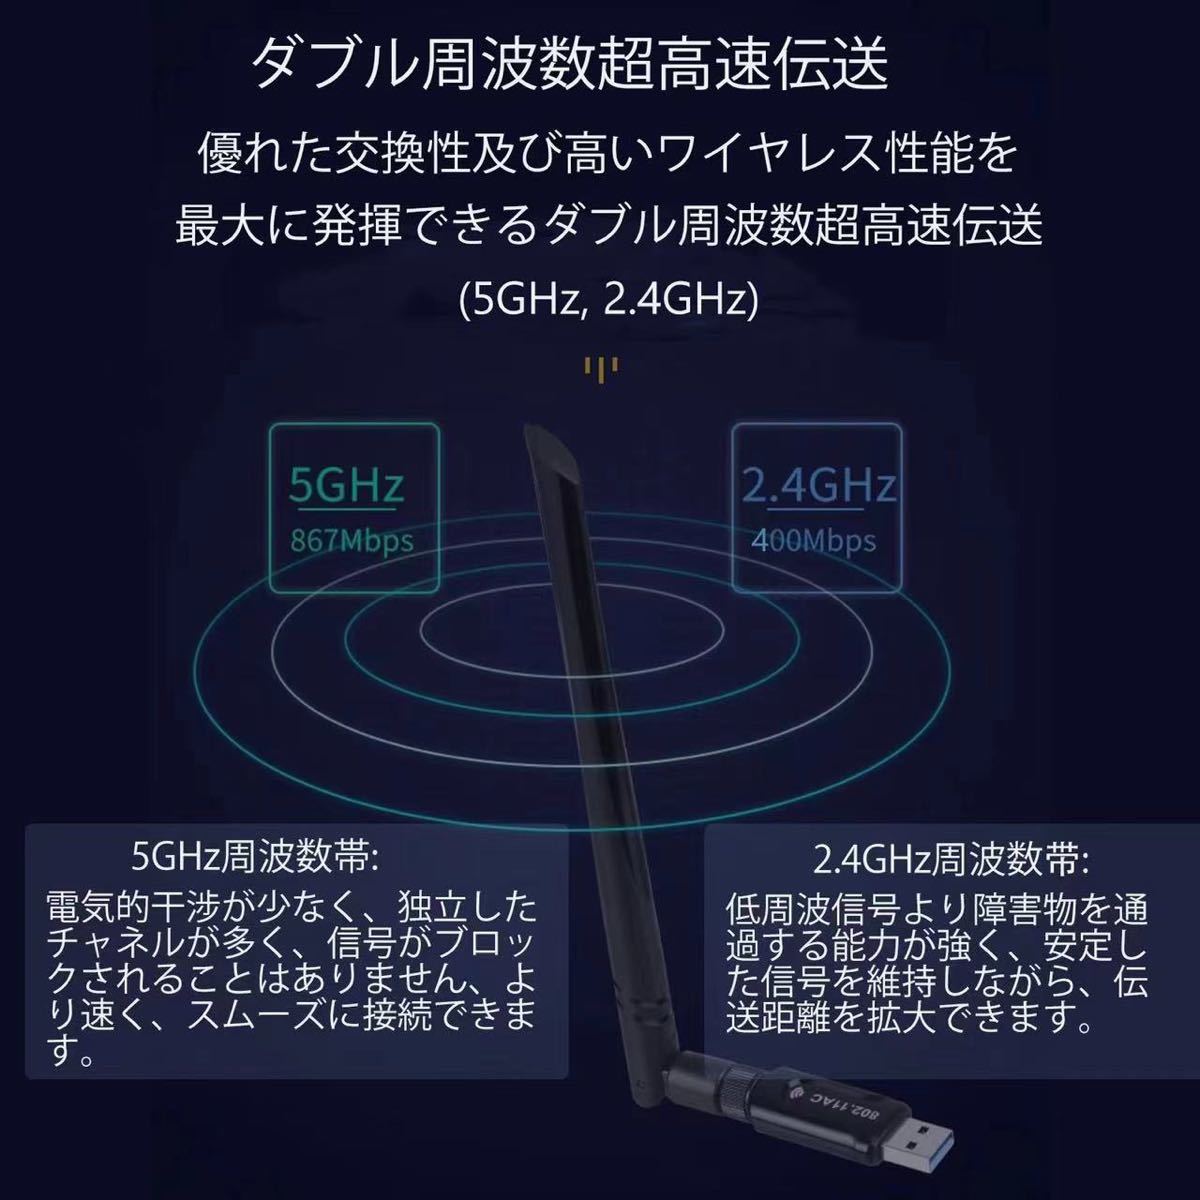 【2022新版】WiFi 無線LAN 子機 1300Mbps USB3.0 WIFIアダプター 5.8G/2.4Gデュアルバンド5dBi高速通信13個放熱穴 WPS暗号化機能